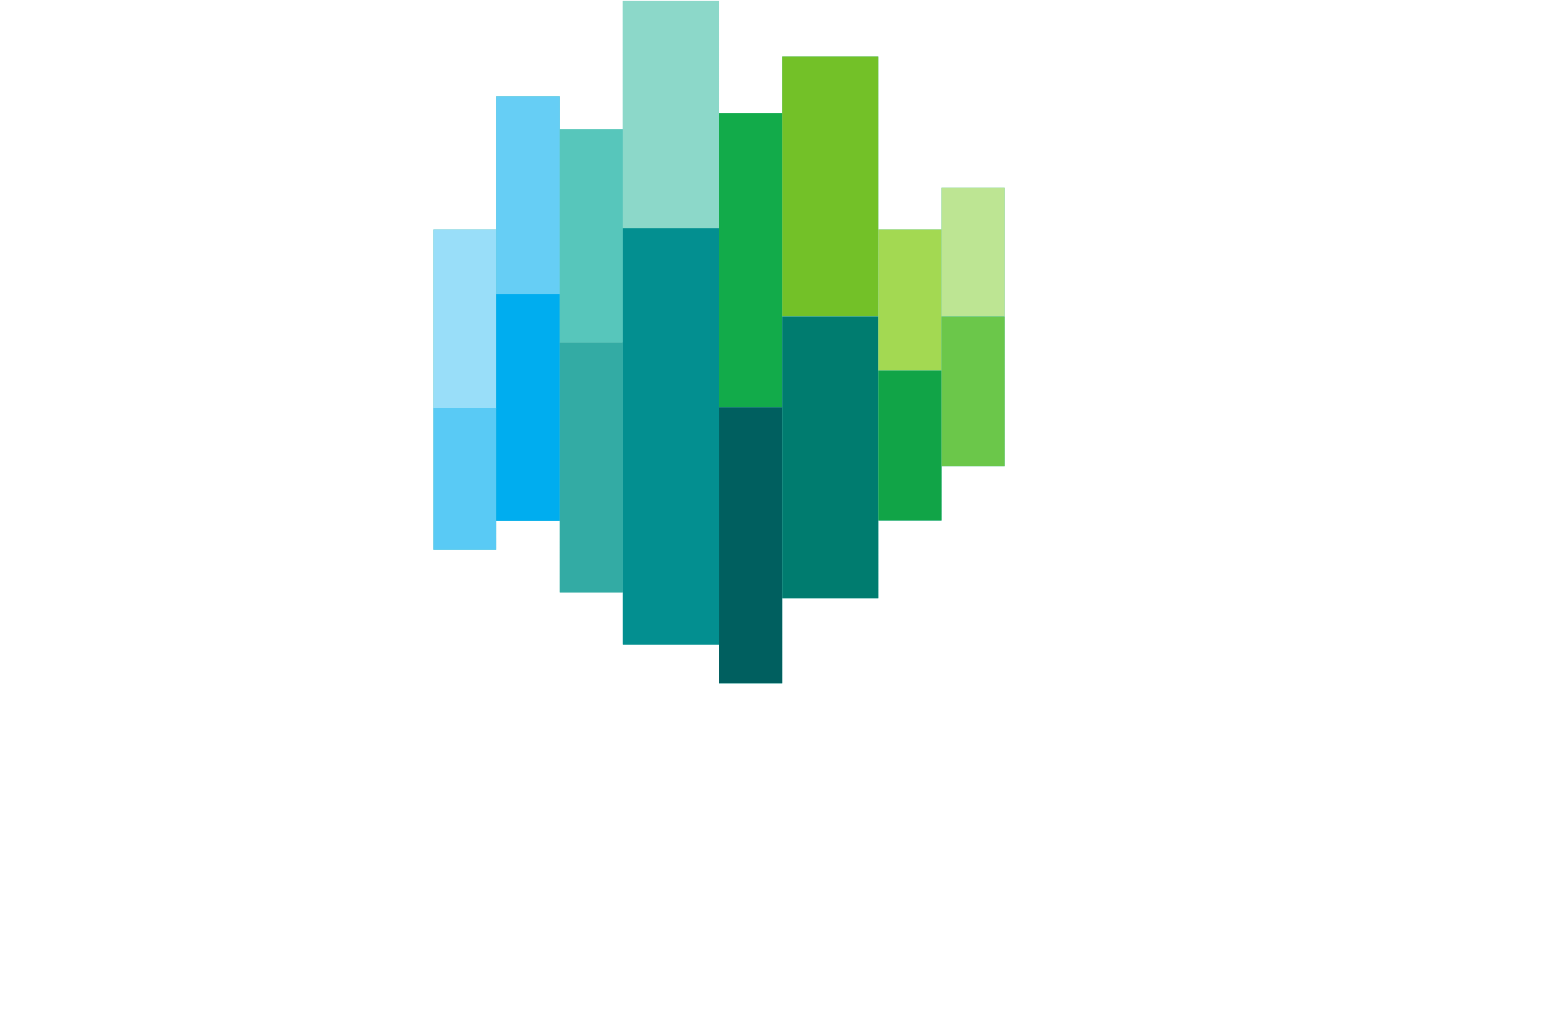 Euronext logo grand pour les fonds sombres (PNG transparent)